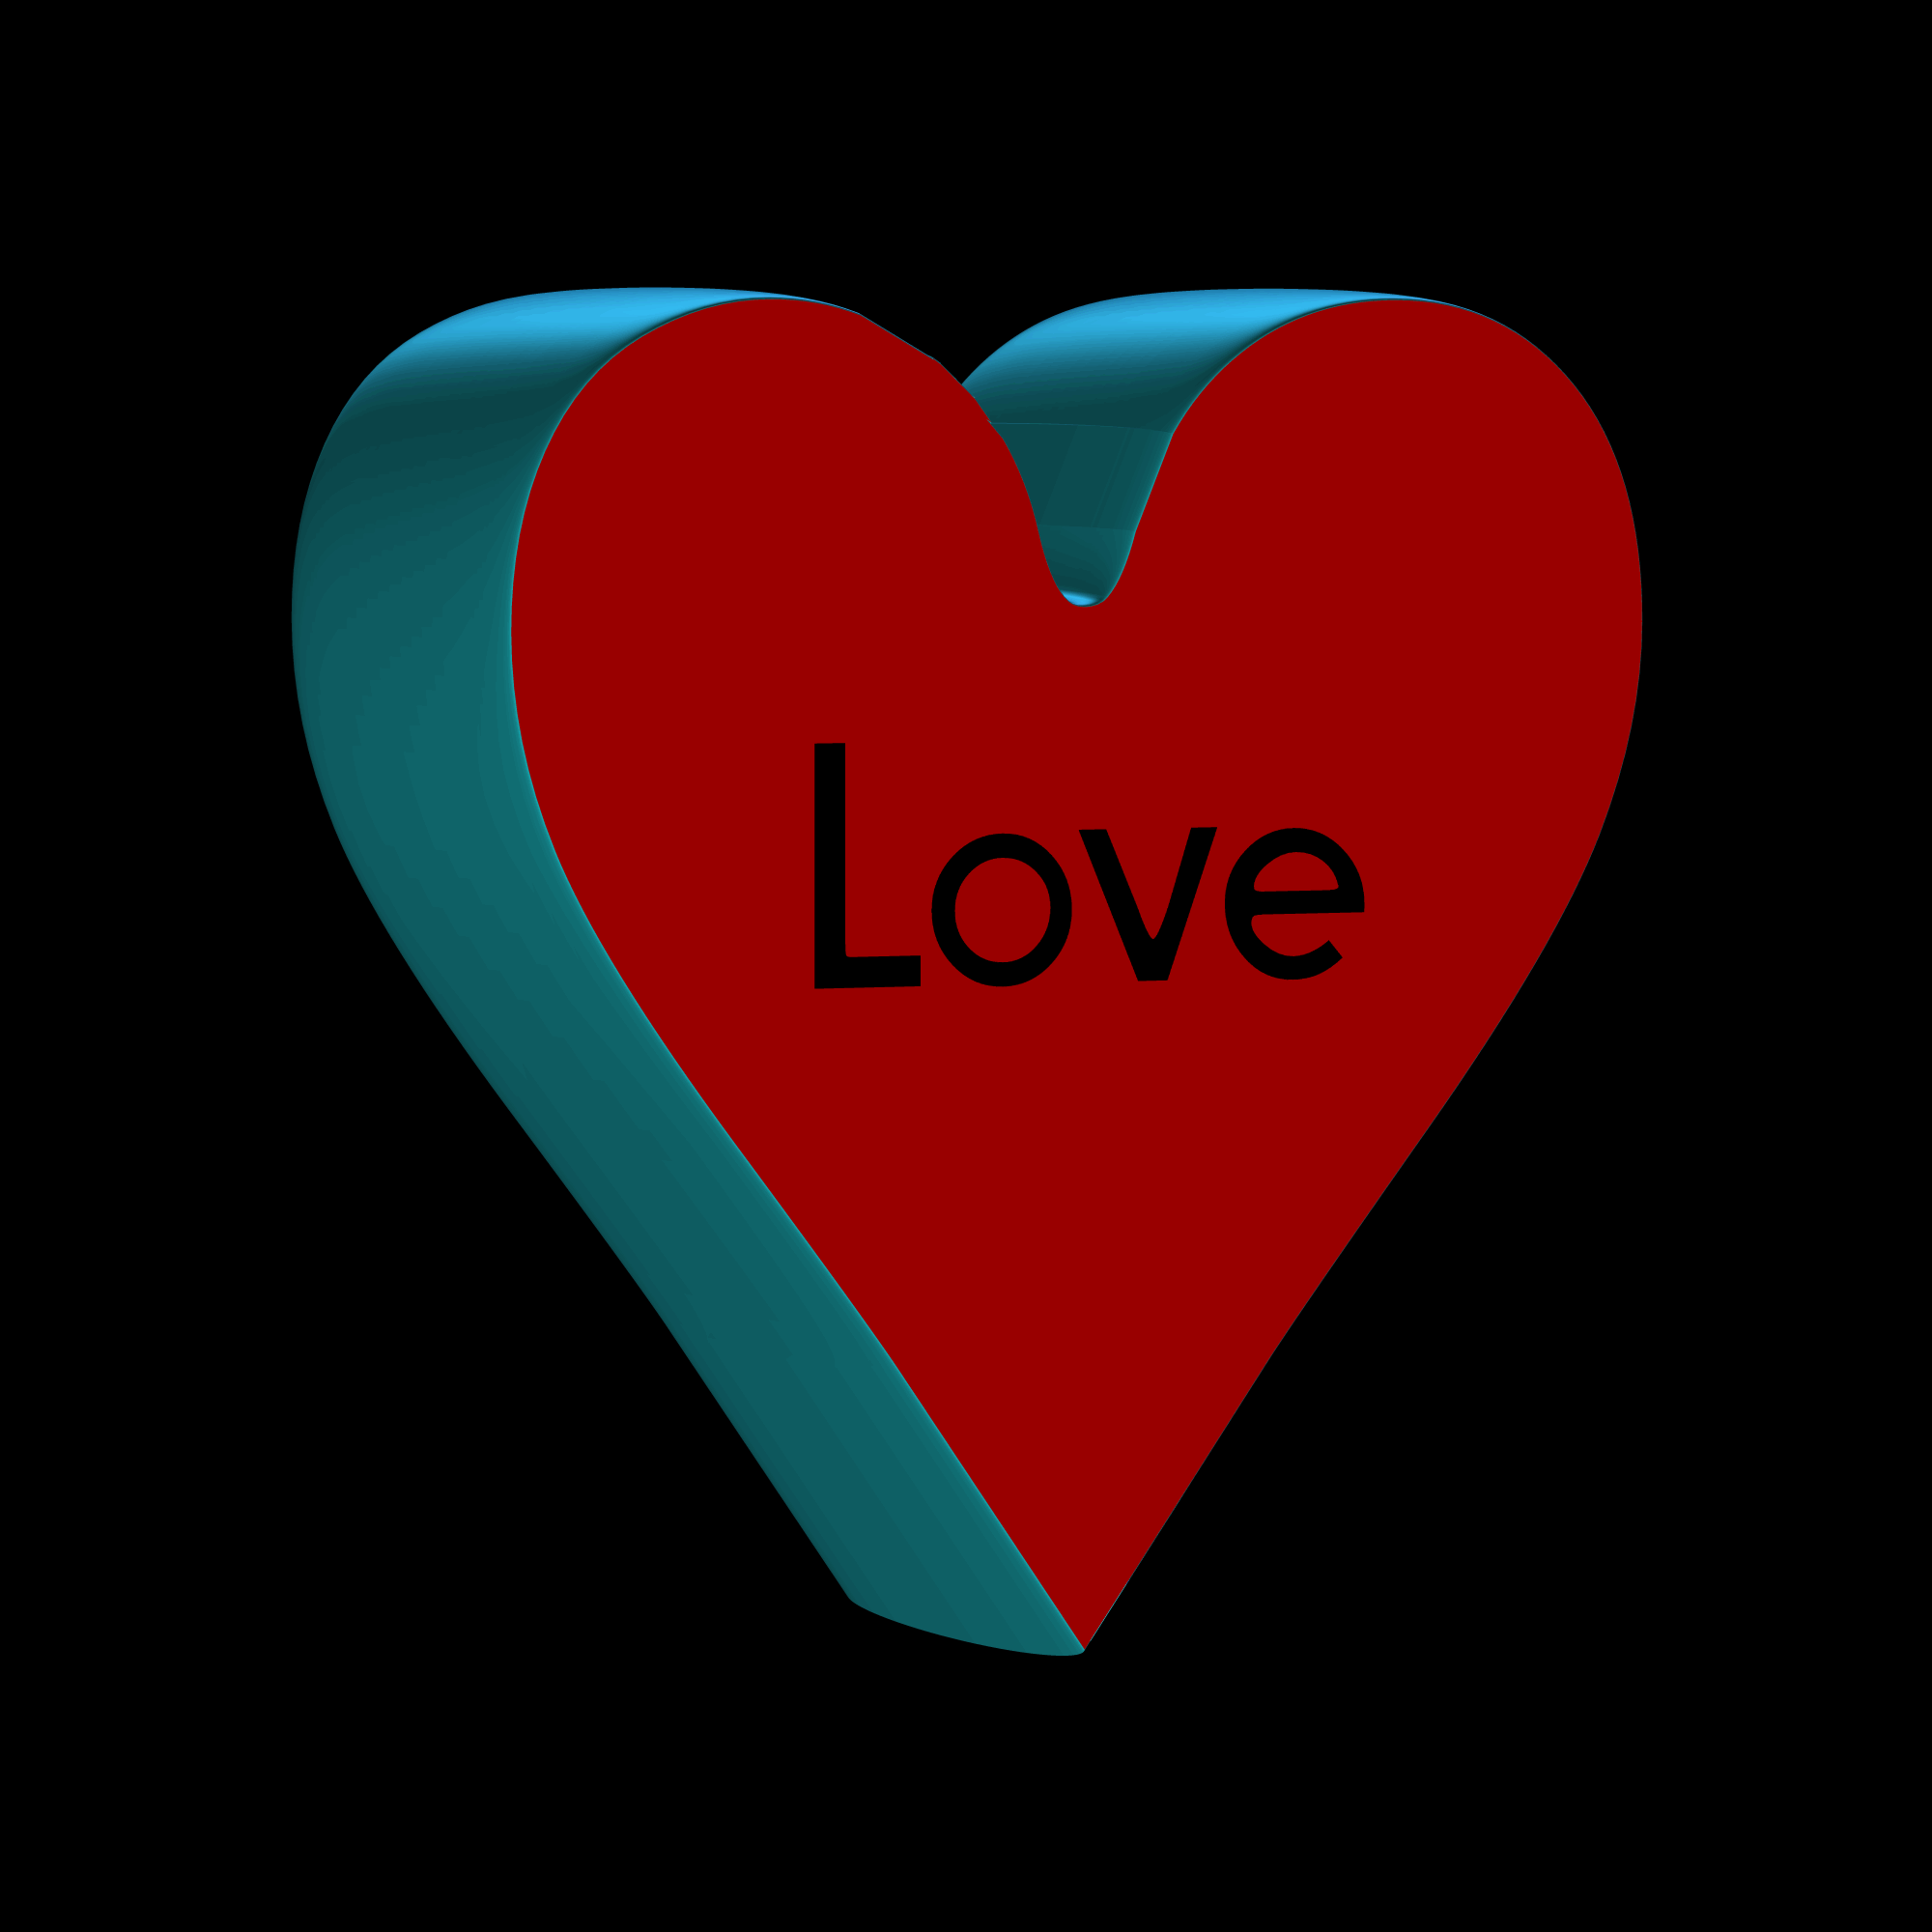 Transforme Suas Mensagens com Gifs de Coração: Amor em Movimento!